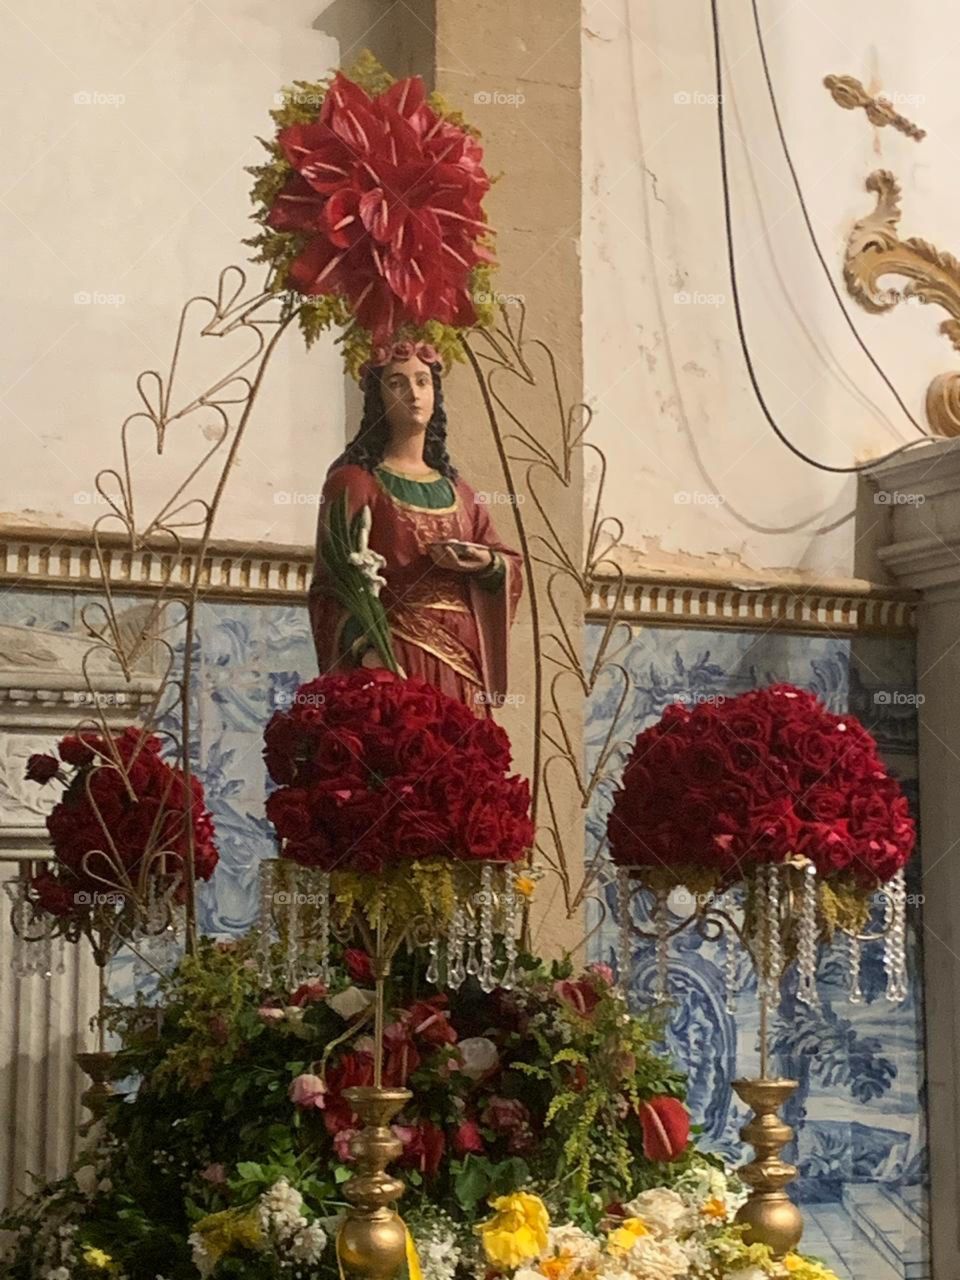 Festa de Santa Luzia - a Santa dos Oftalmologistas, a santa da visão 